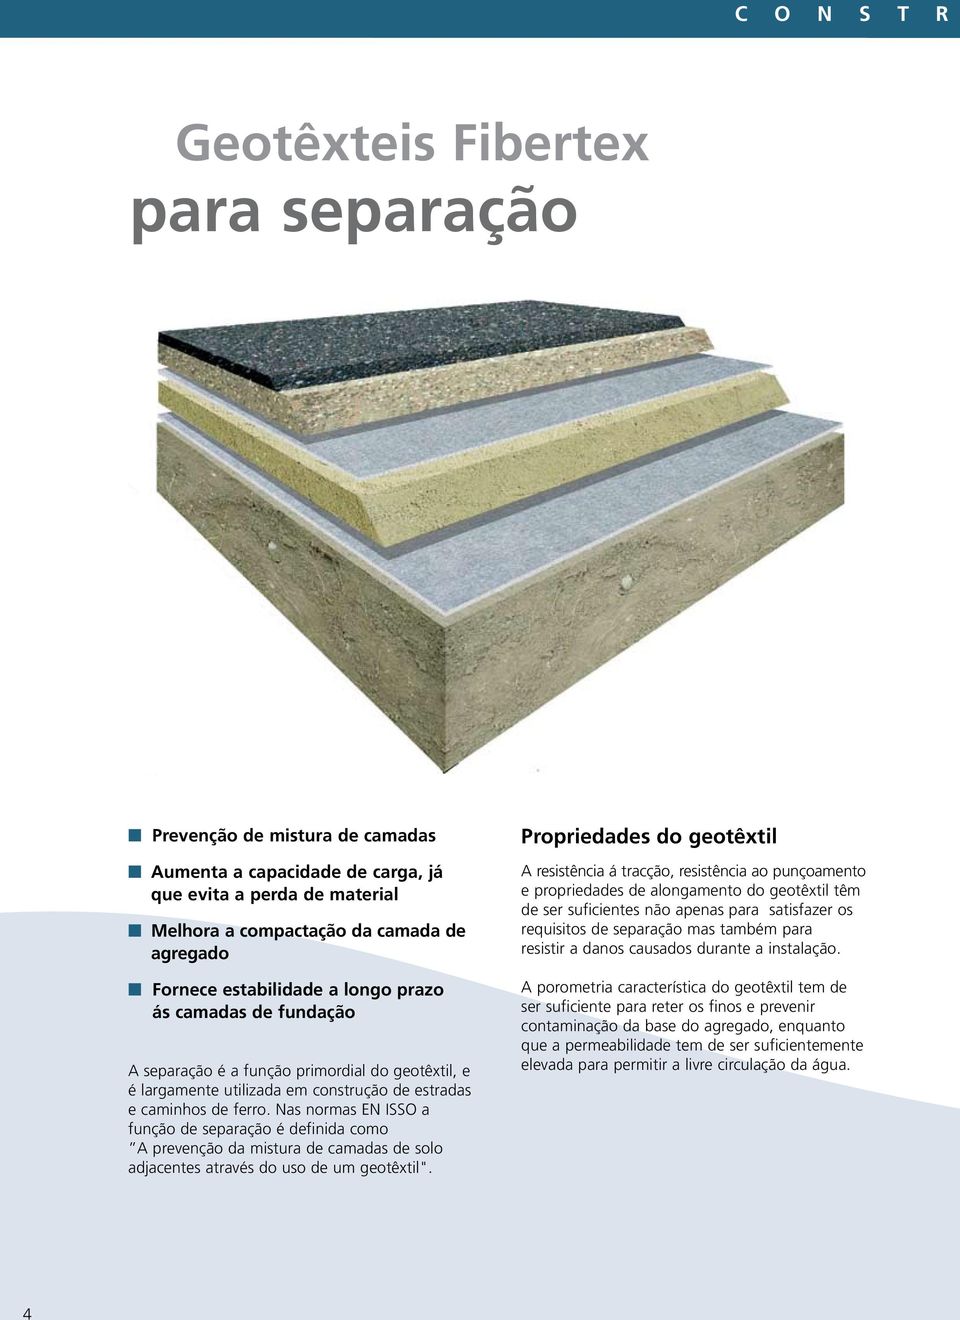 Nas normas EN ISSO a função de separação é definida como A prevenção da mistura de camadas de solo adjacentes através do uso de um geotêxtil".